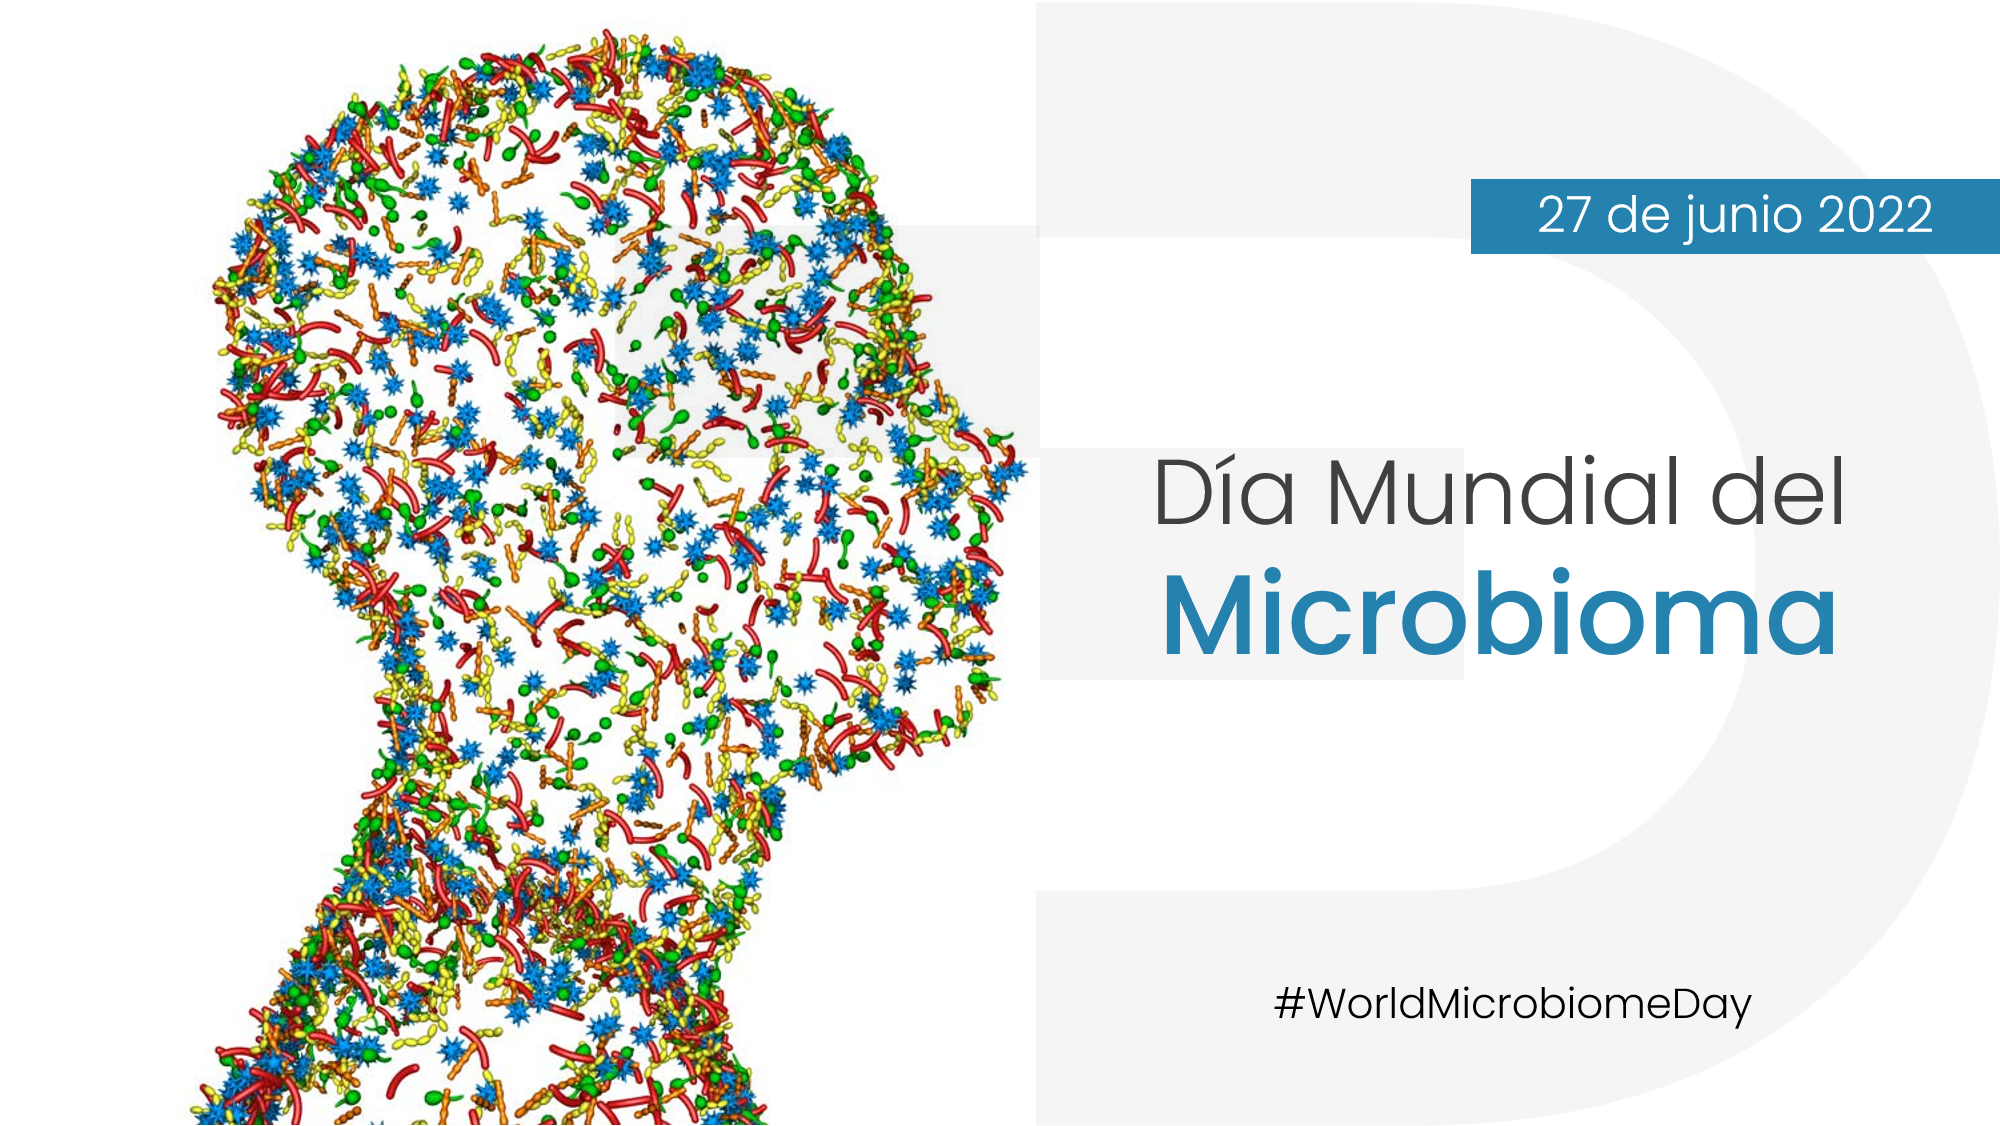 Mundial del Microbioma - Dreamgenics